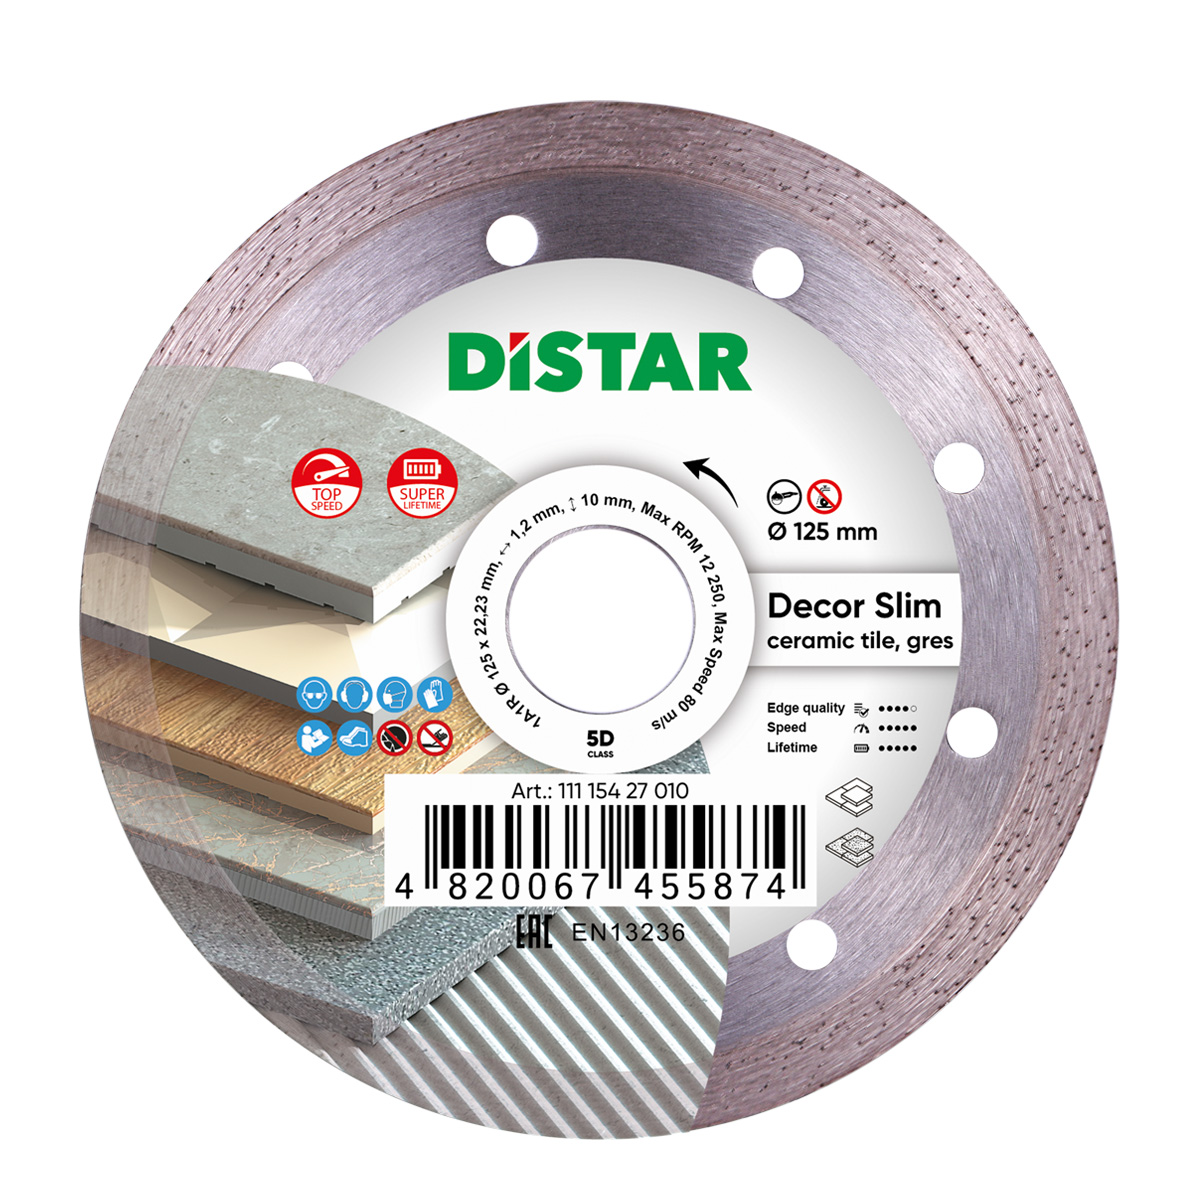 Диск алмазный отрезной по керамике и керамограниту для УШМ Distar 125 мм Decor Slim 5D диск алмазный отрезной по керамике и керамограниту для ушм distar 1a1r 125 мм edge dry 7d